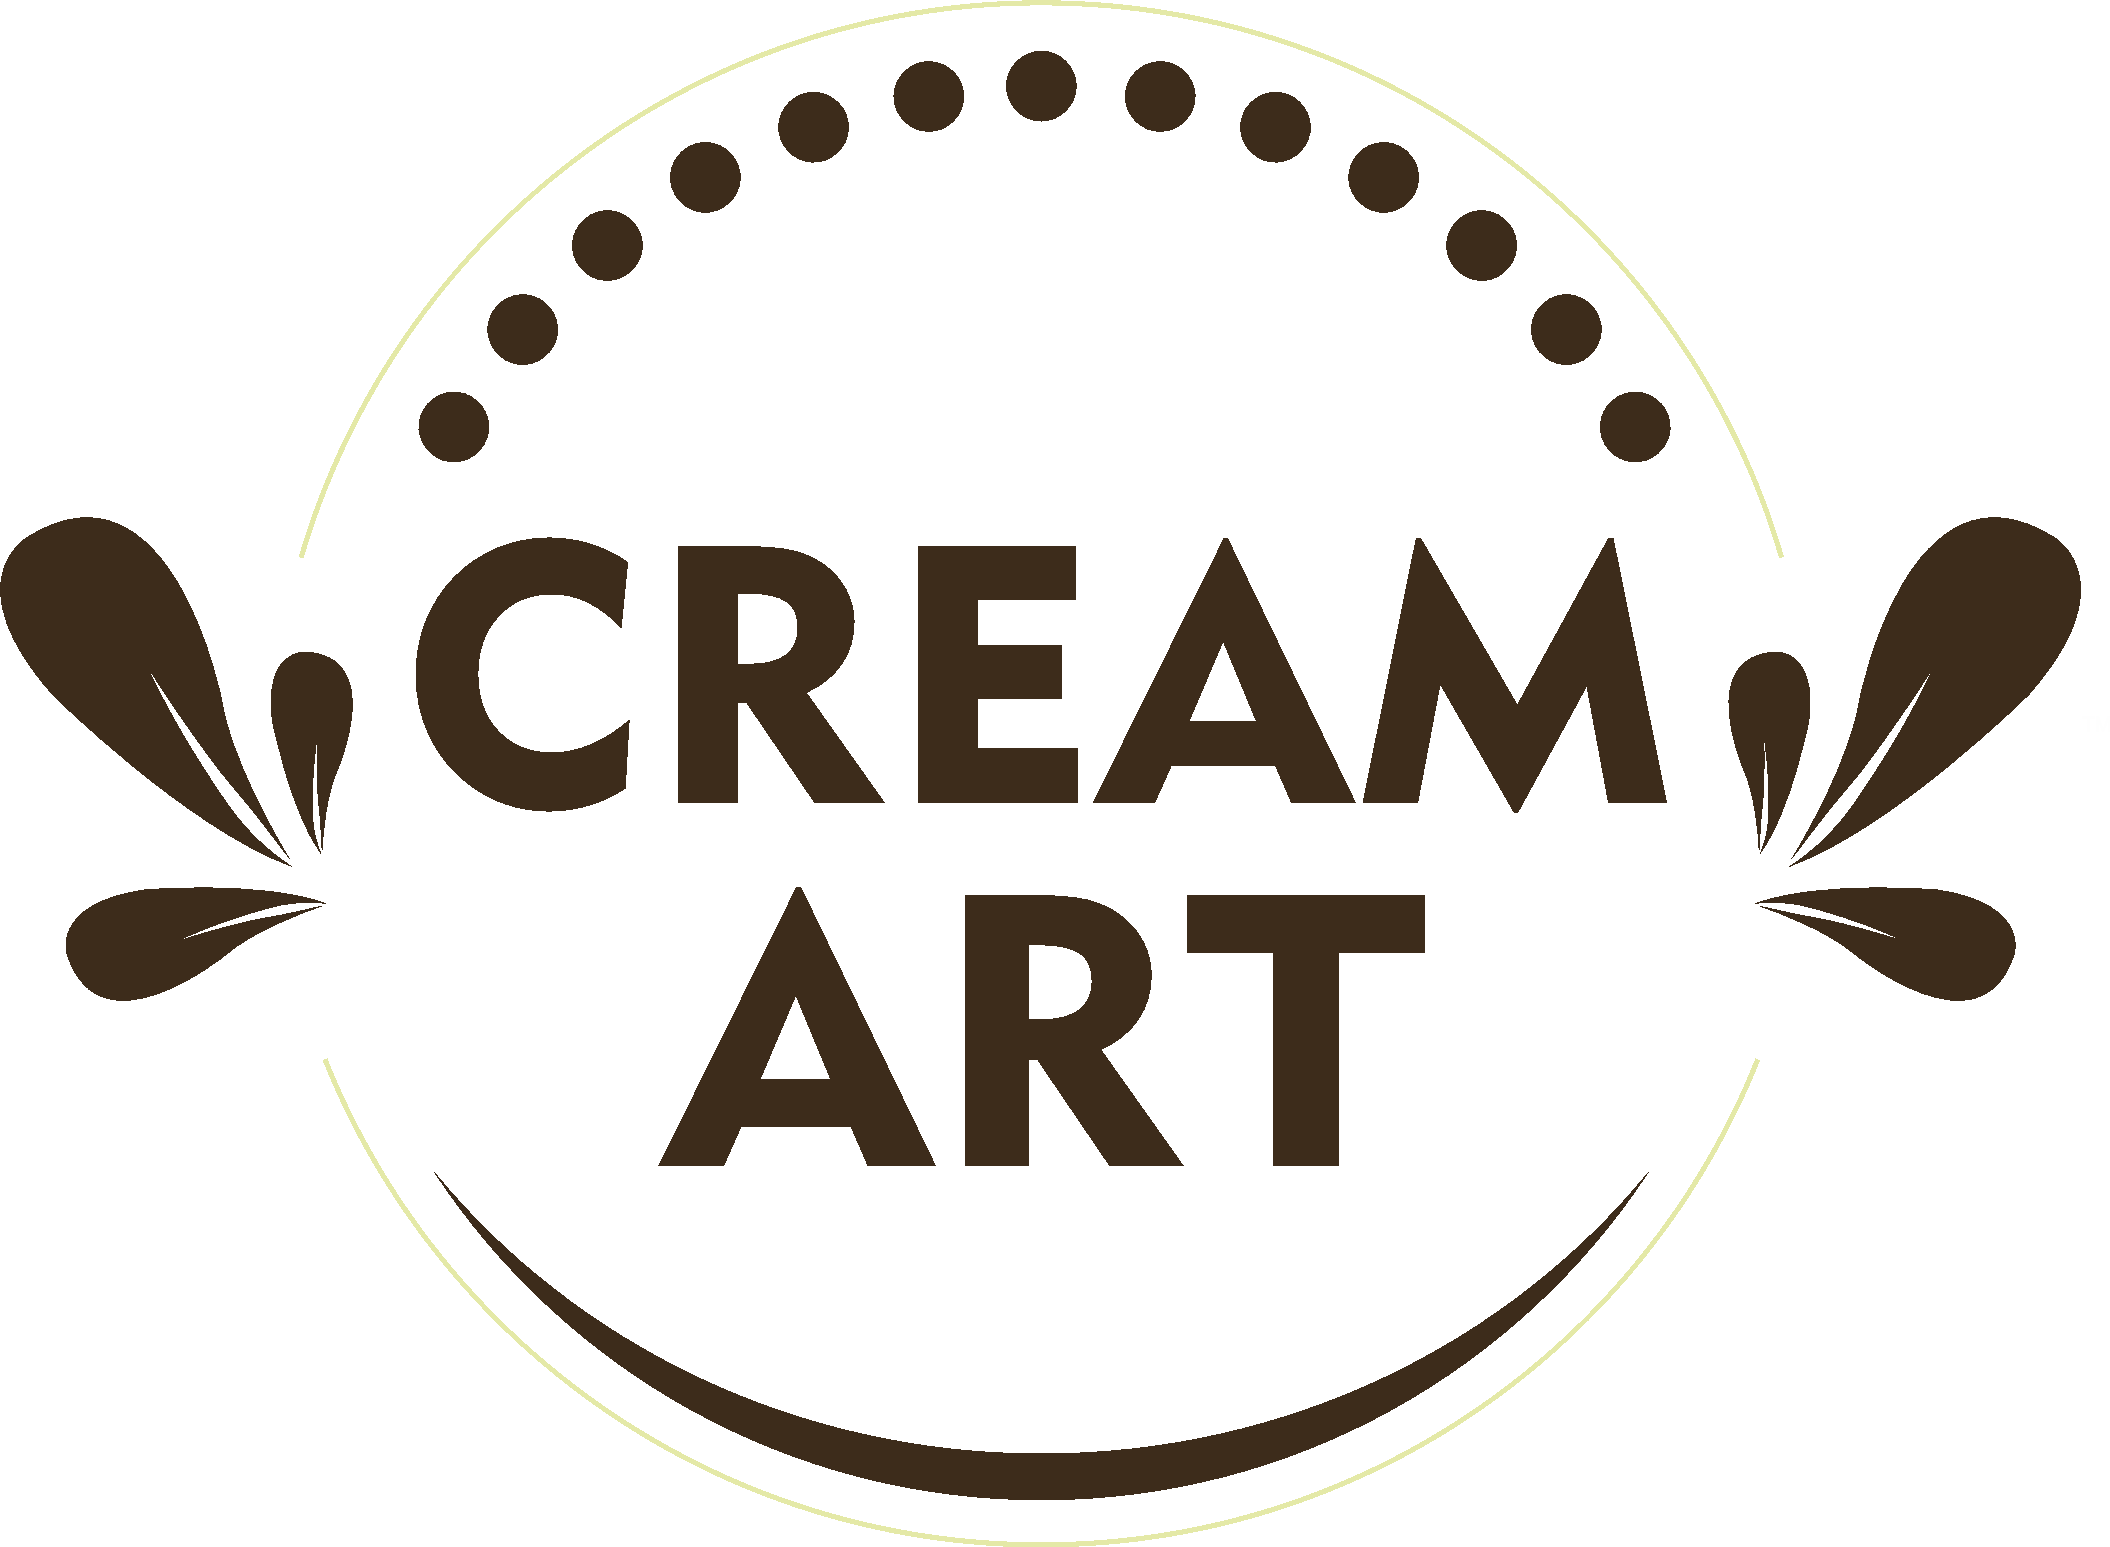 Cream Art-Cream art